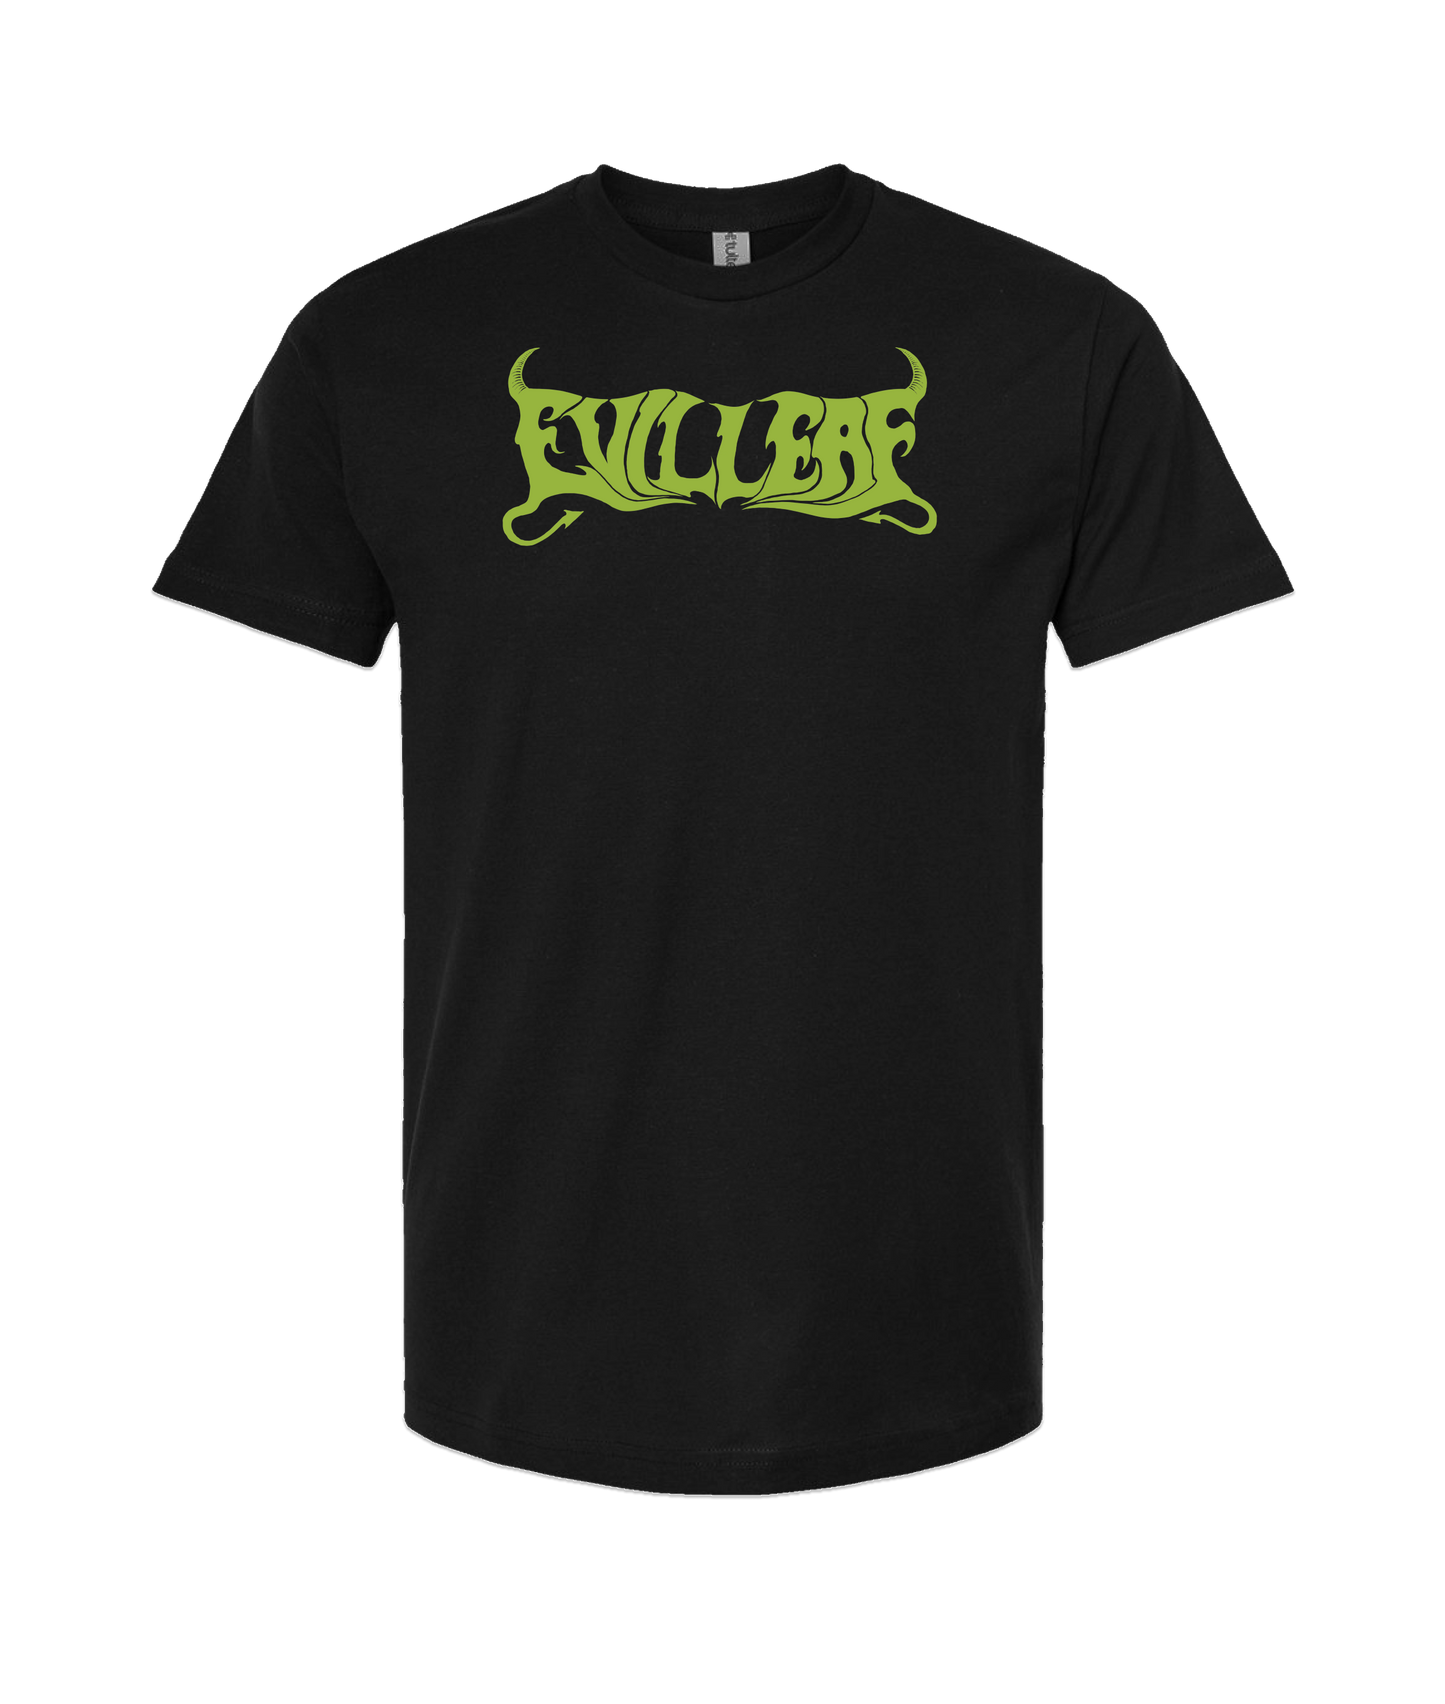 EvilLeaf - The Goat Leaf Of Evil - Black T Shirt